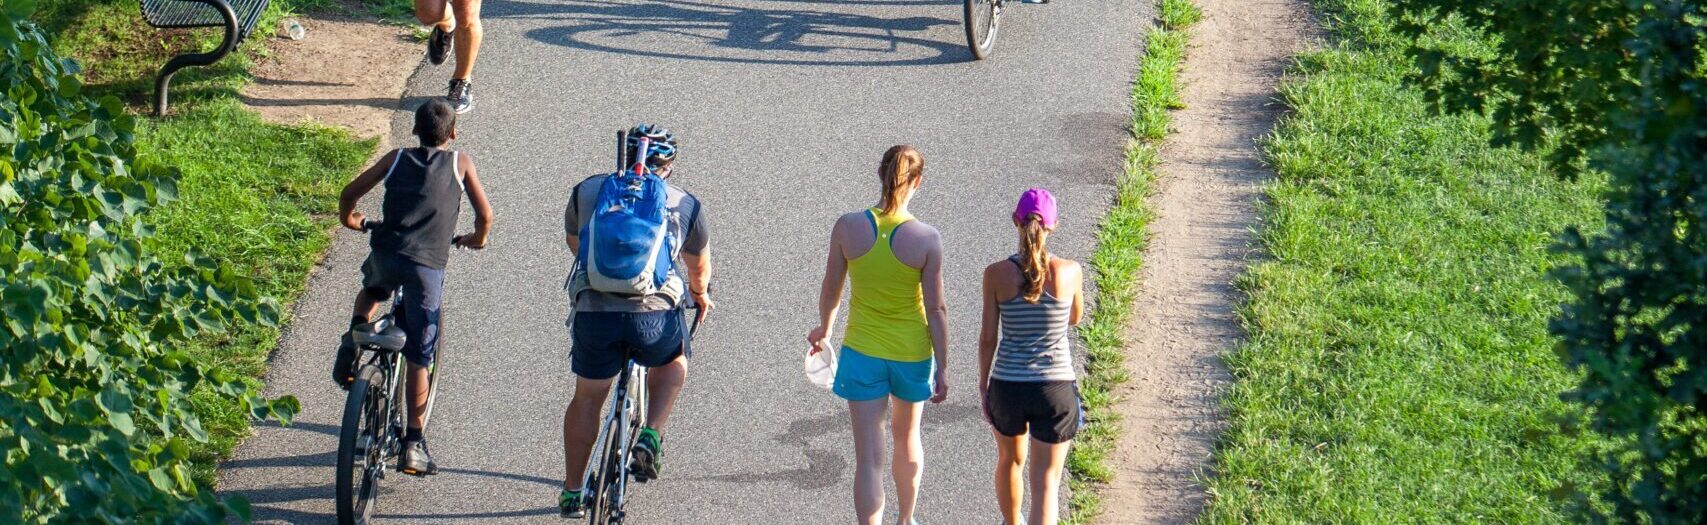 Cykelsti med cyklister og fodgængere